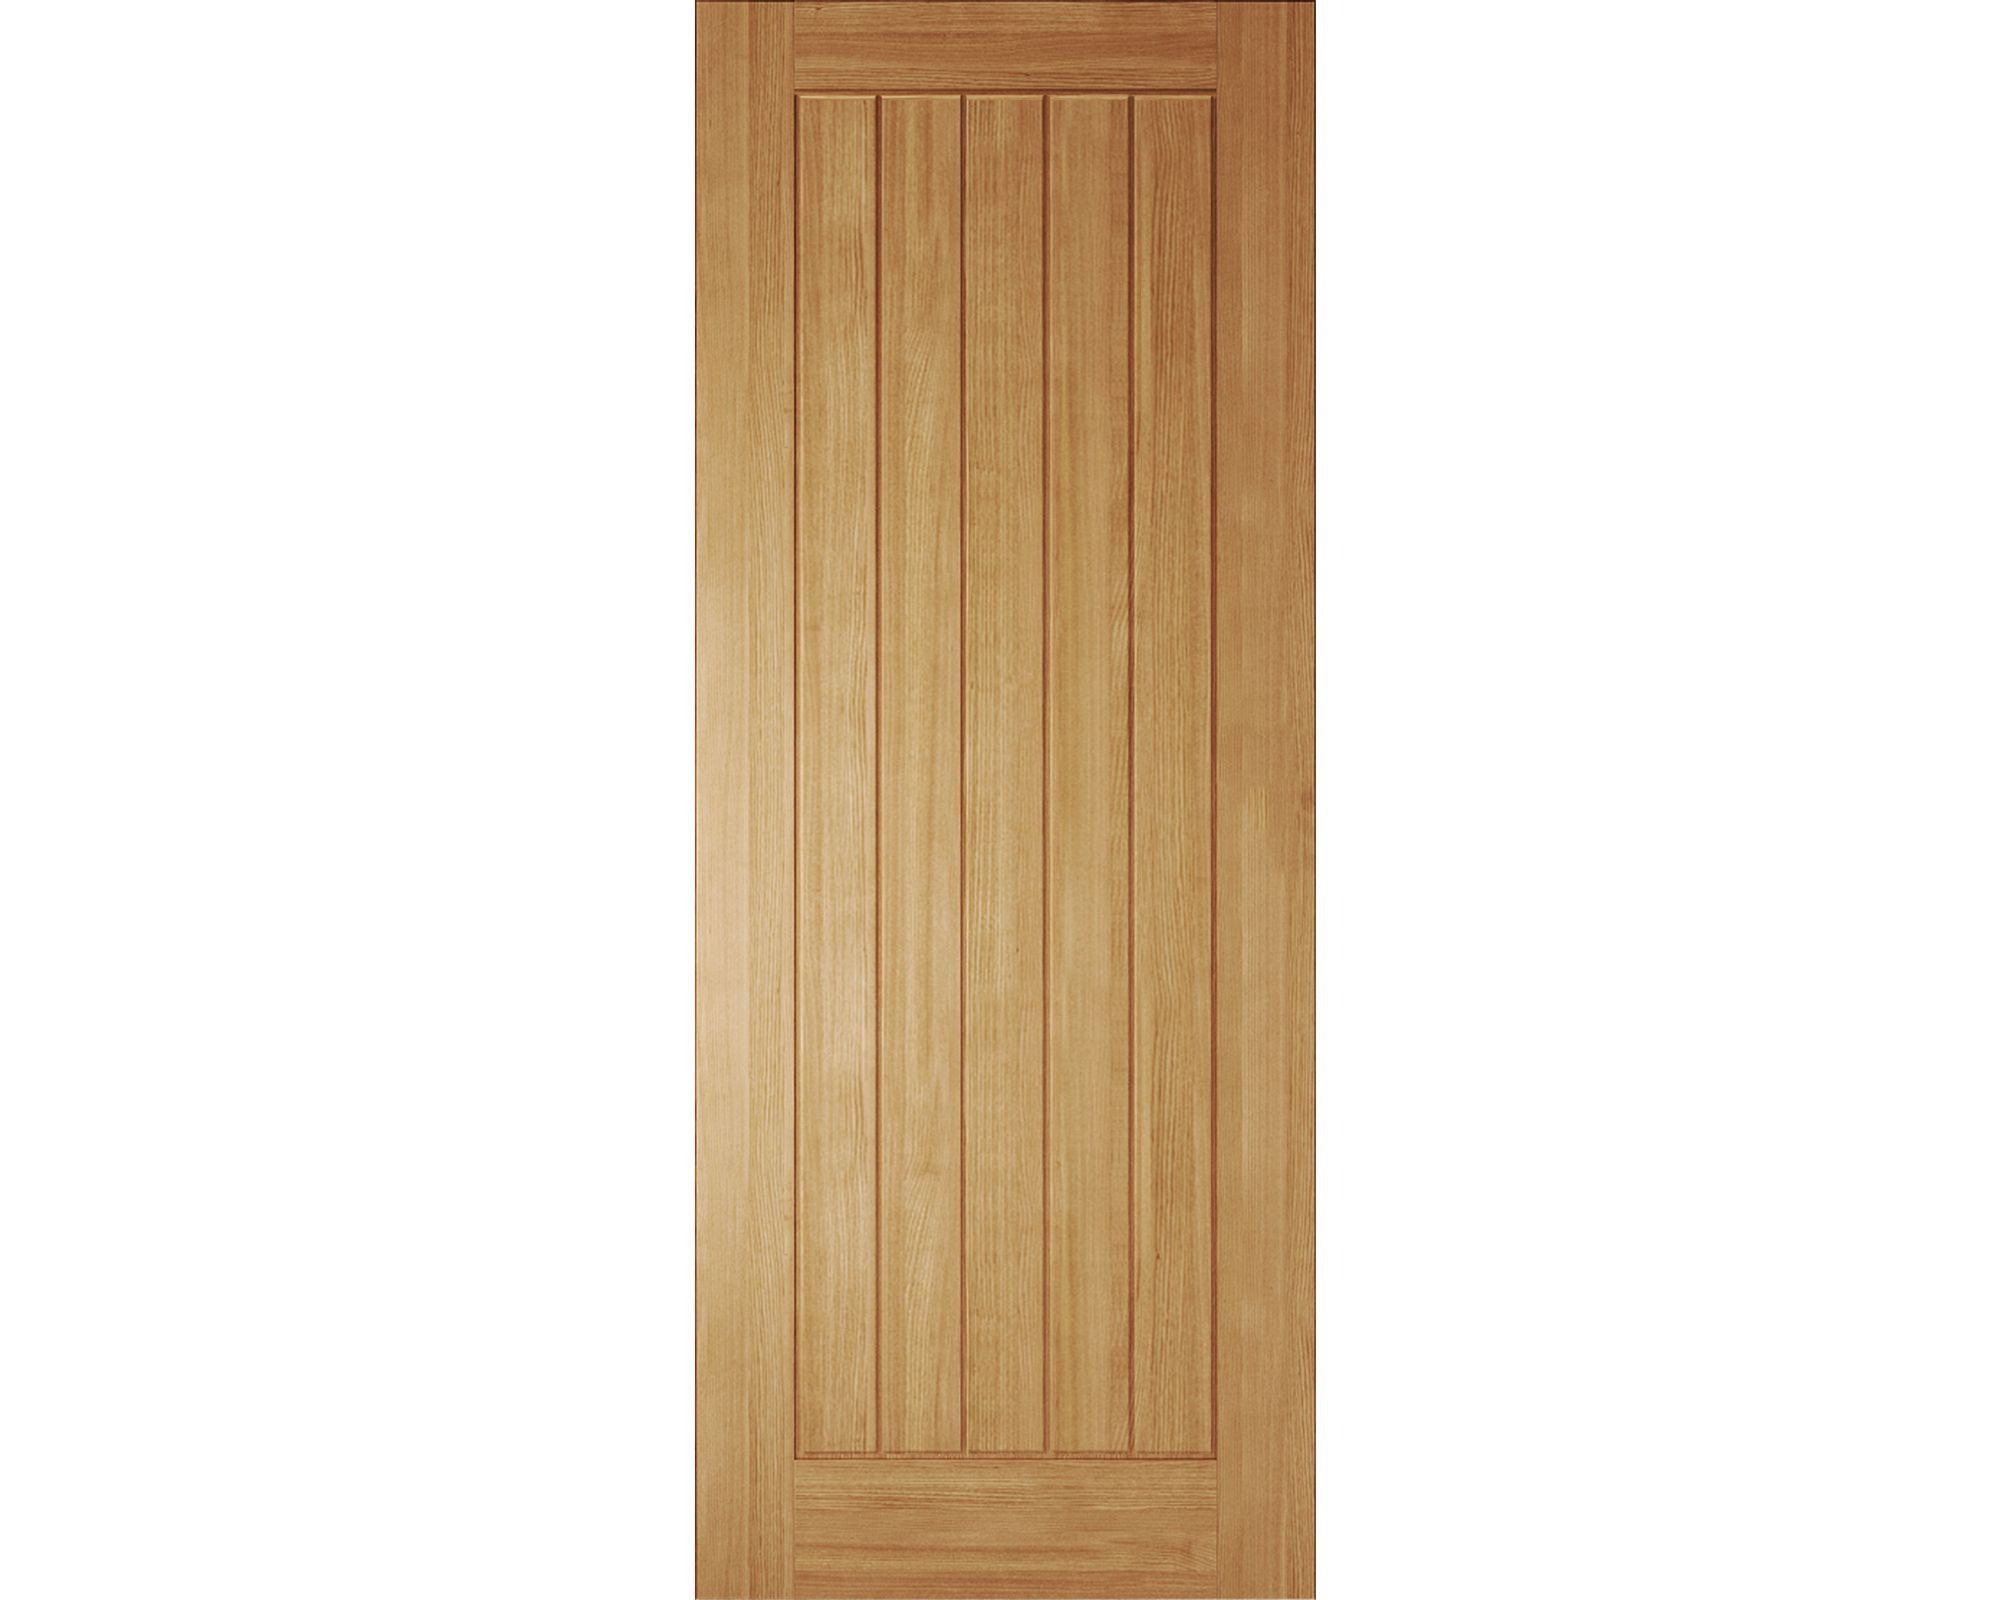 Fully finished Cottage White oak veneer Internal Fire door, (H)1981mm (W)838mm (T)44mm